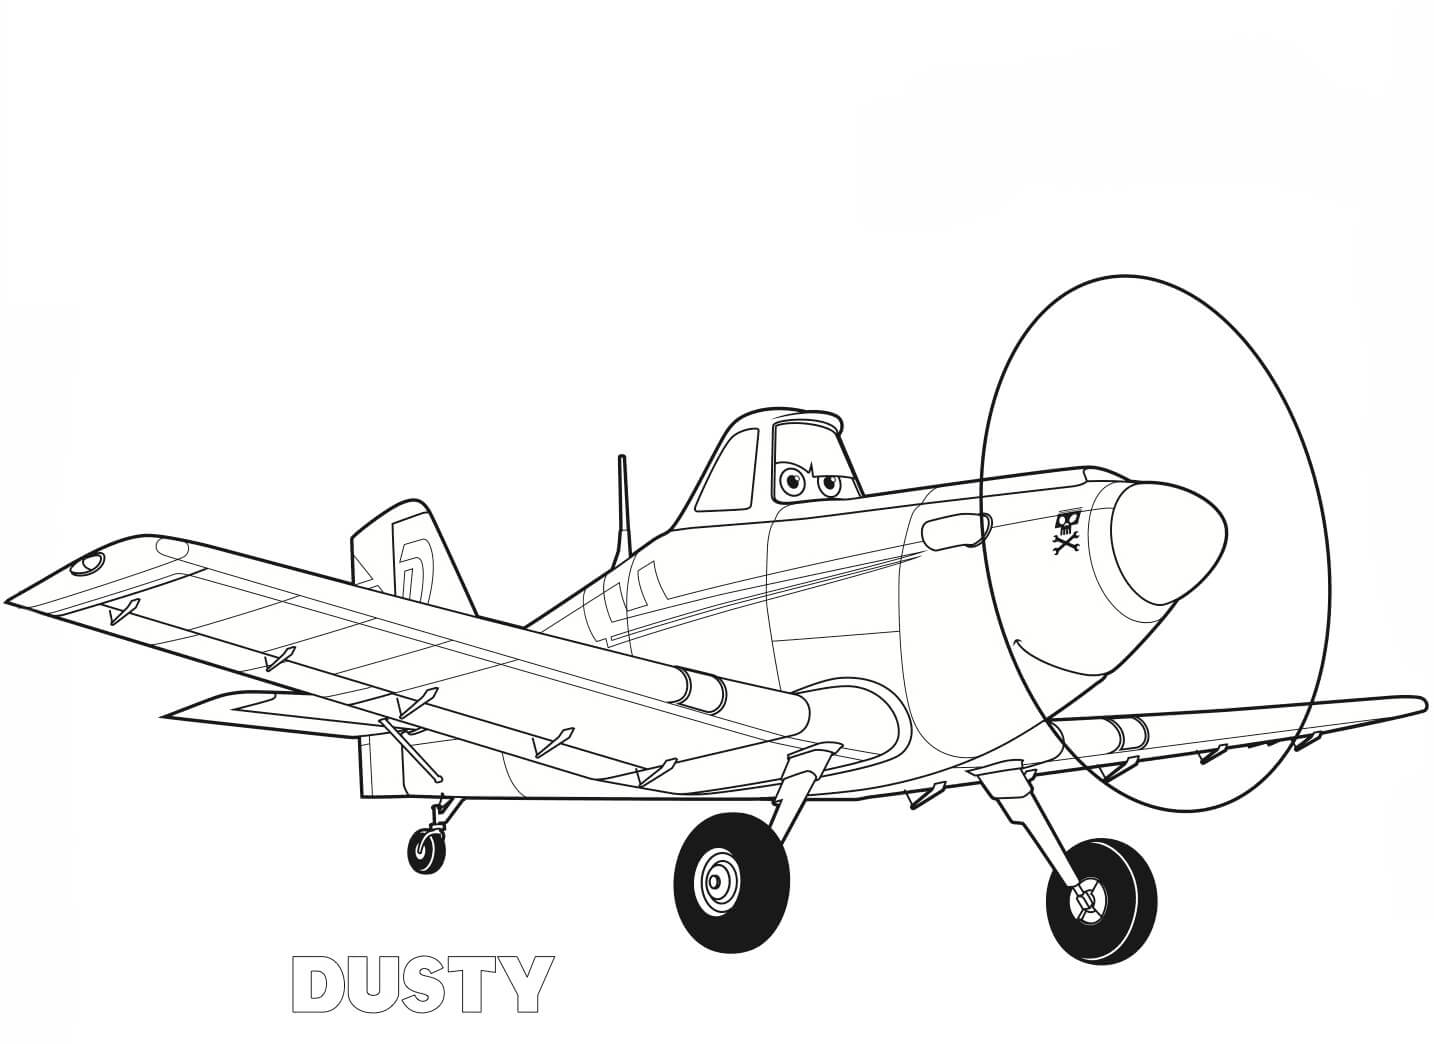 Desenhos de Avião Dusty para colorir